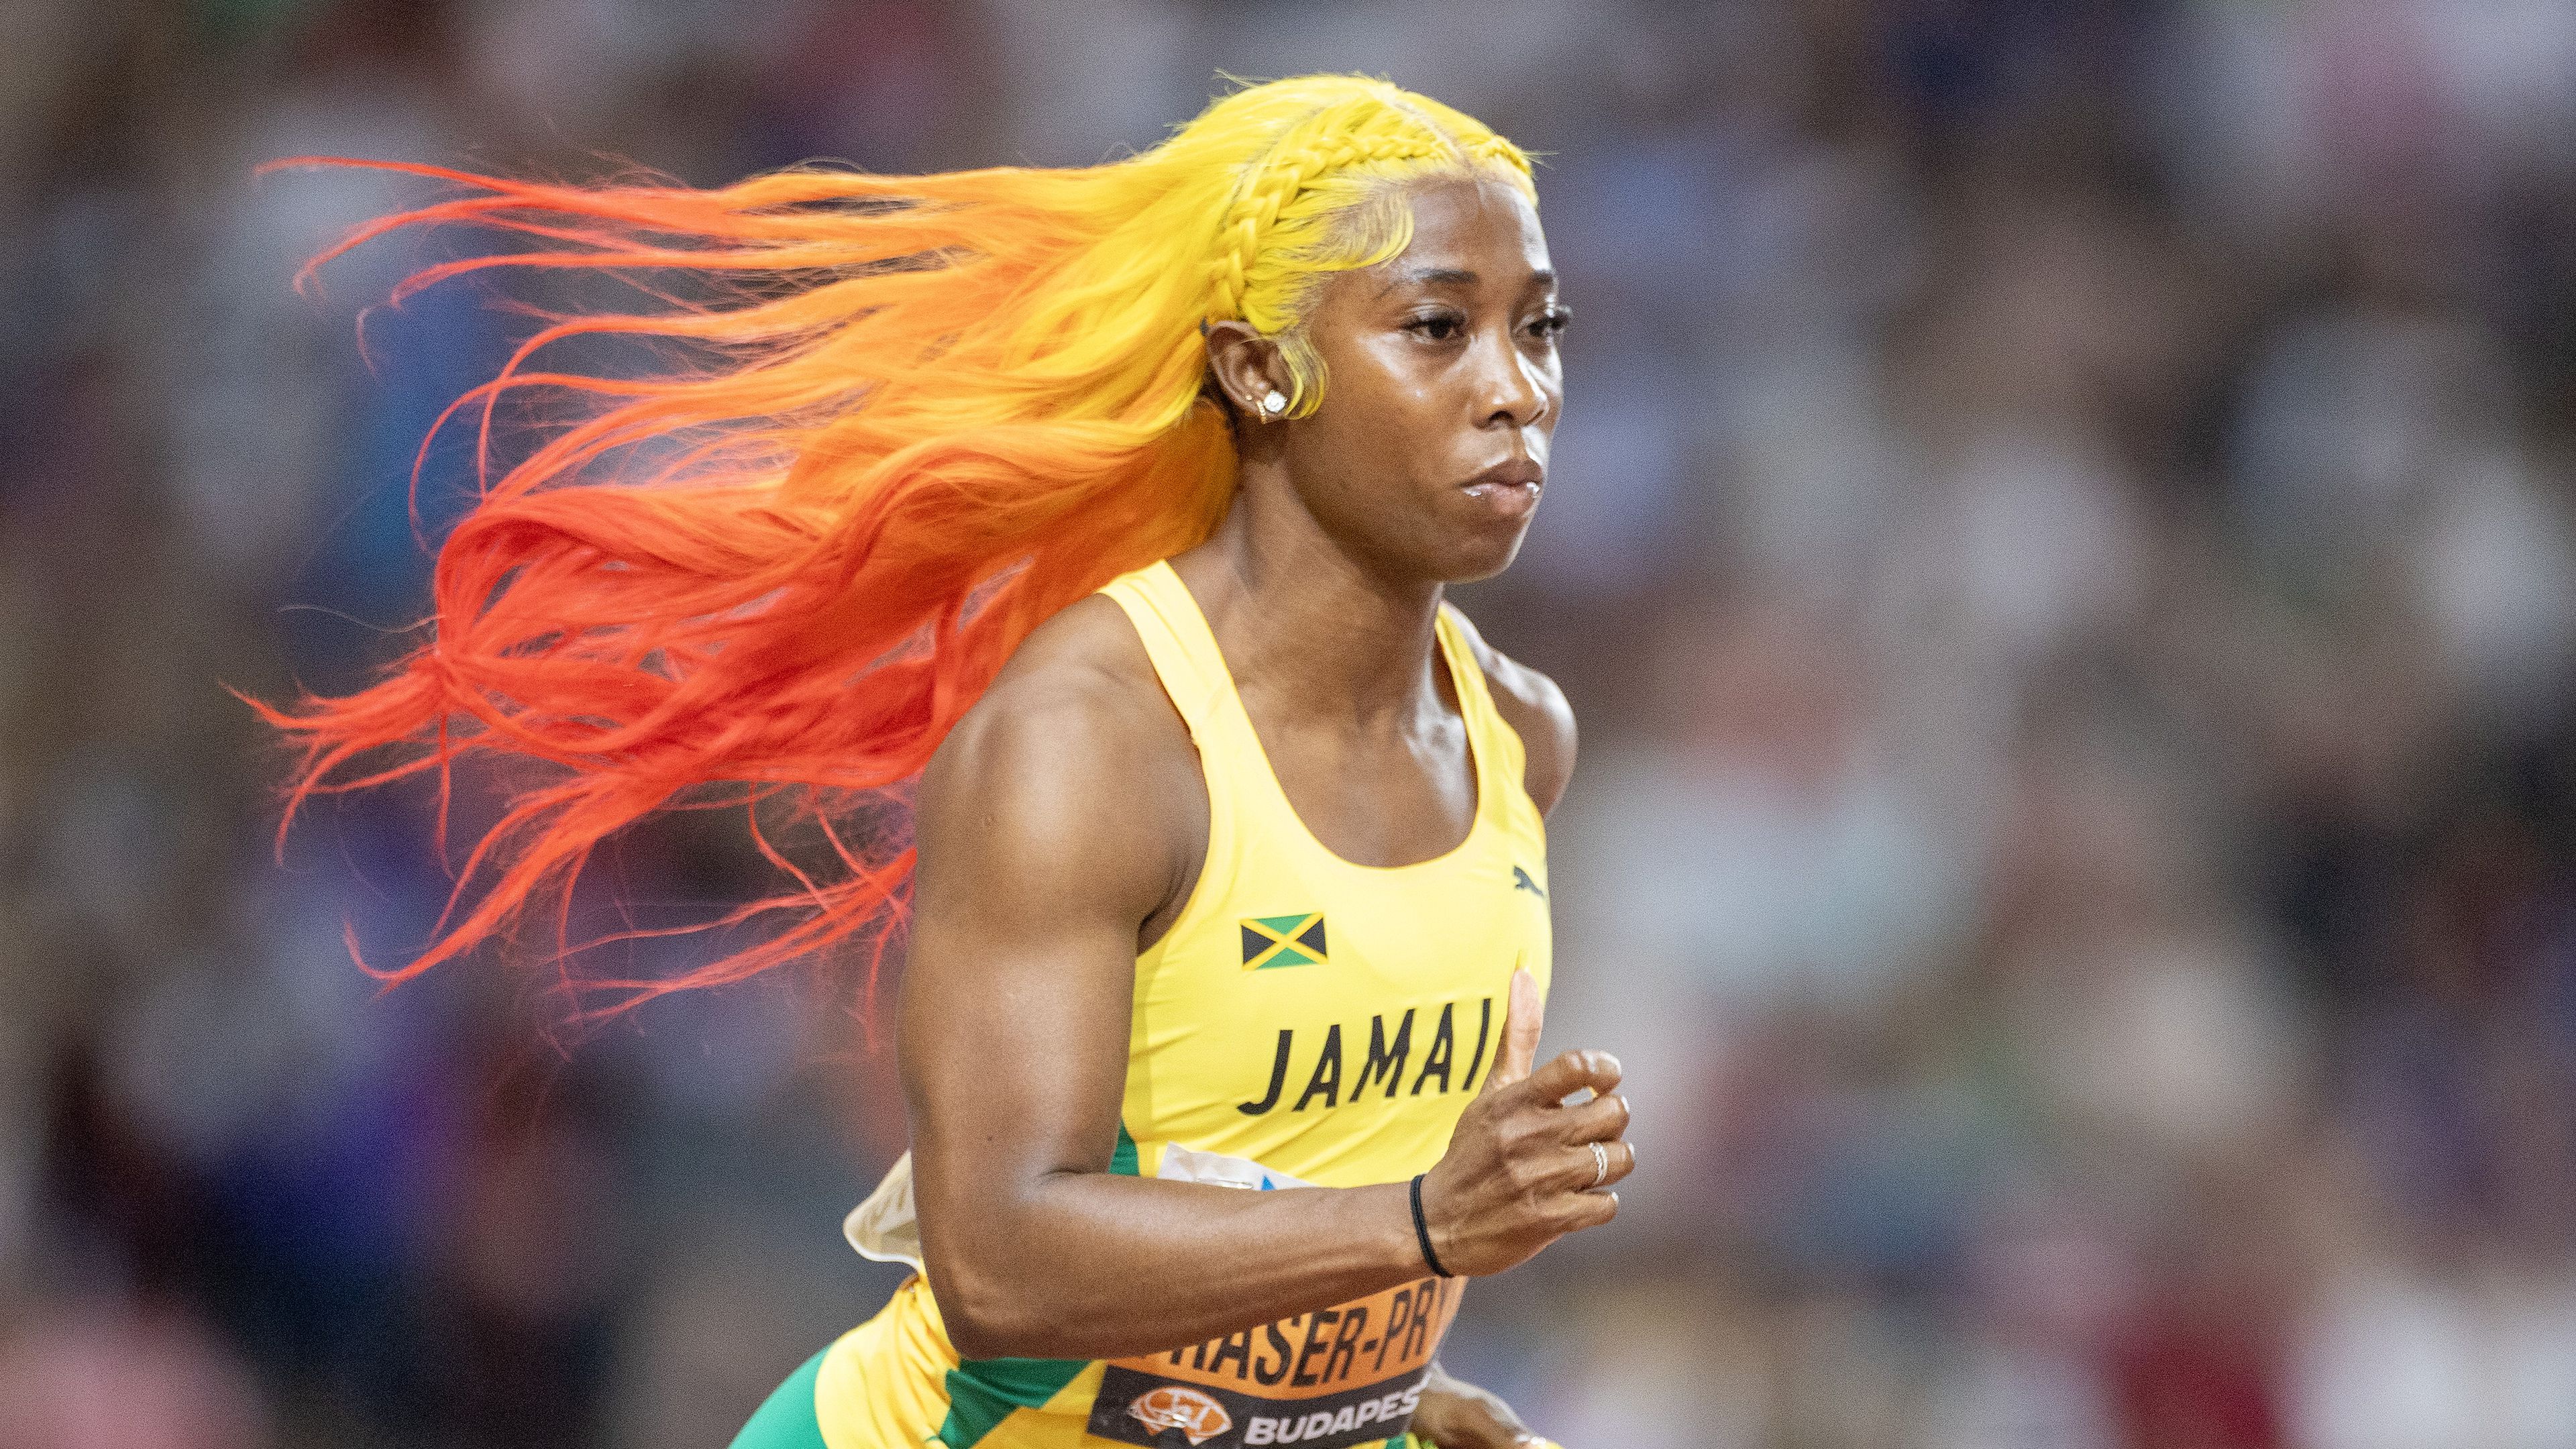 Utolsó olimpiájára készül a 36 éves jamaicai klasszis